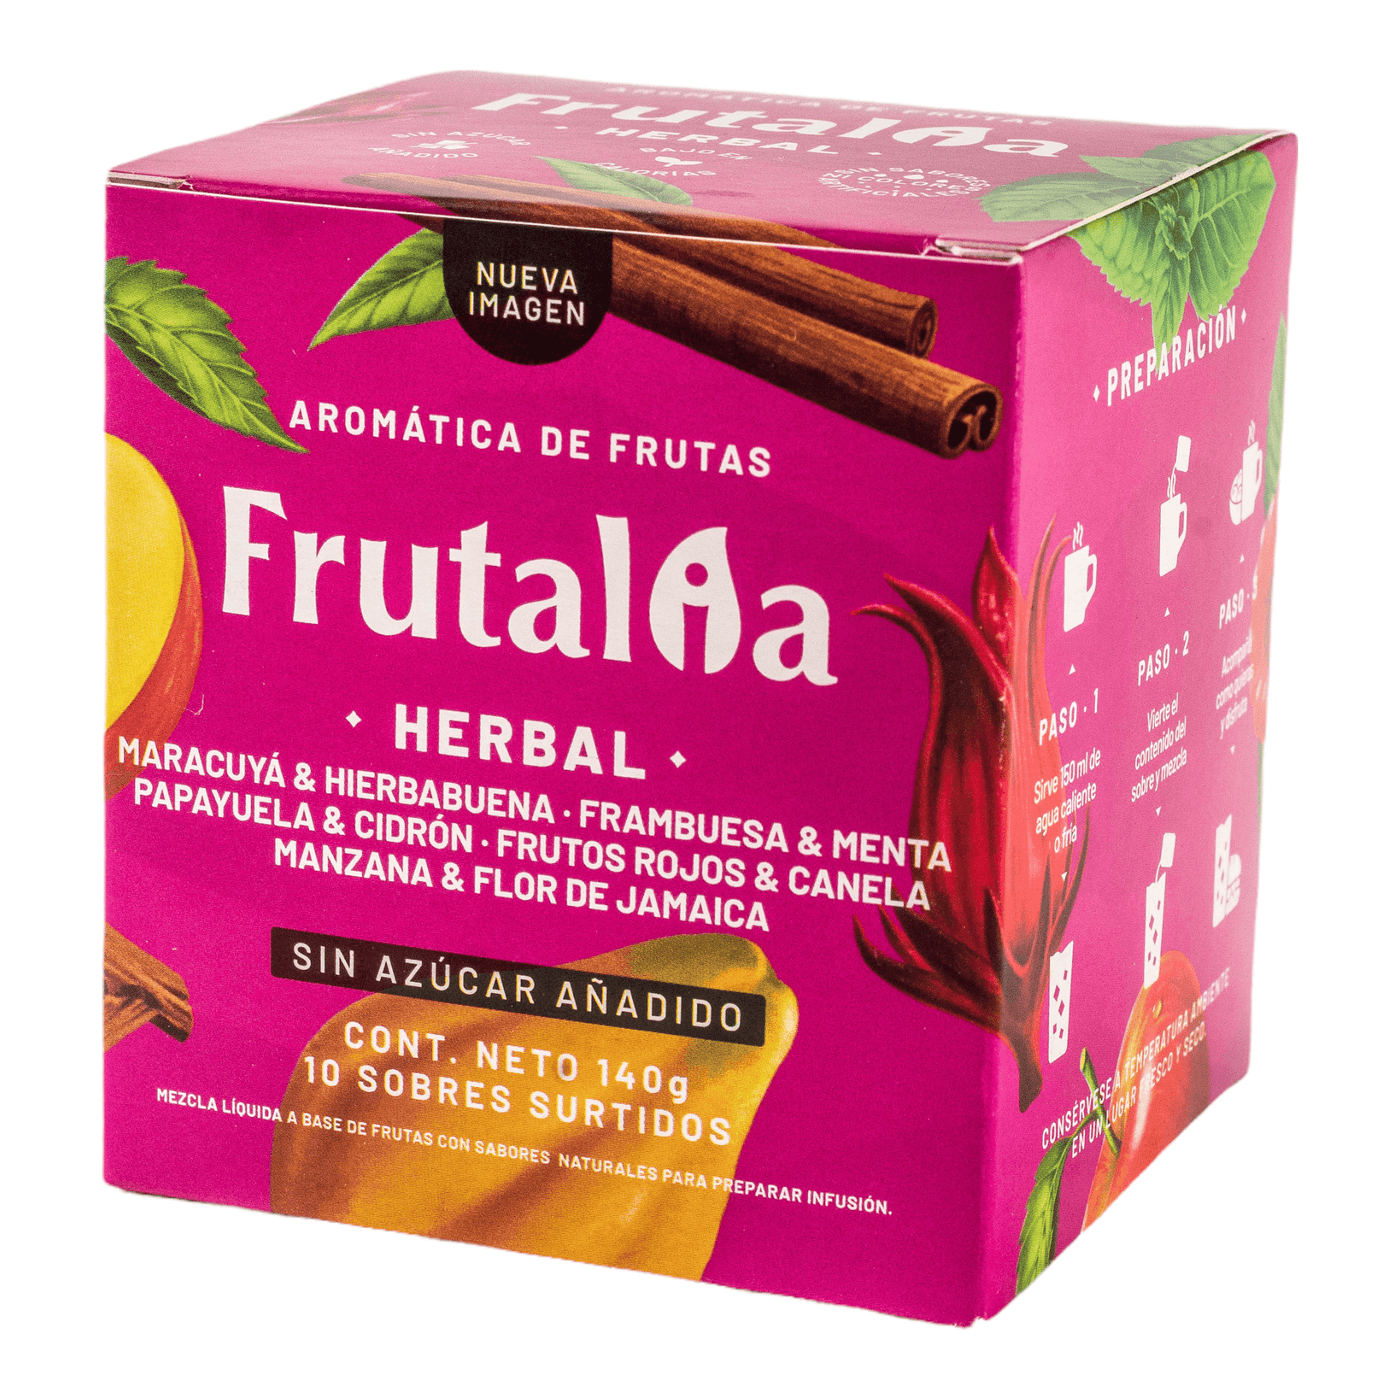 Aromática de Frutas - Frutalia- Herbal